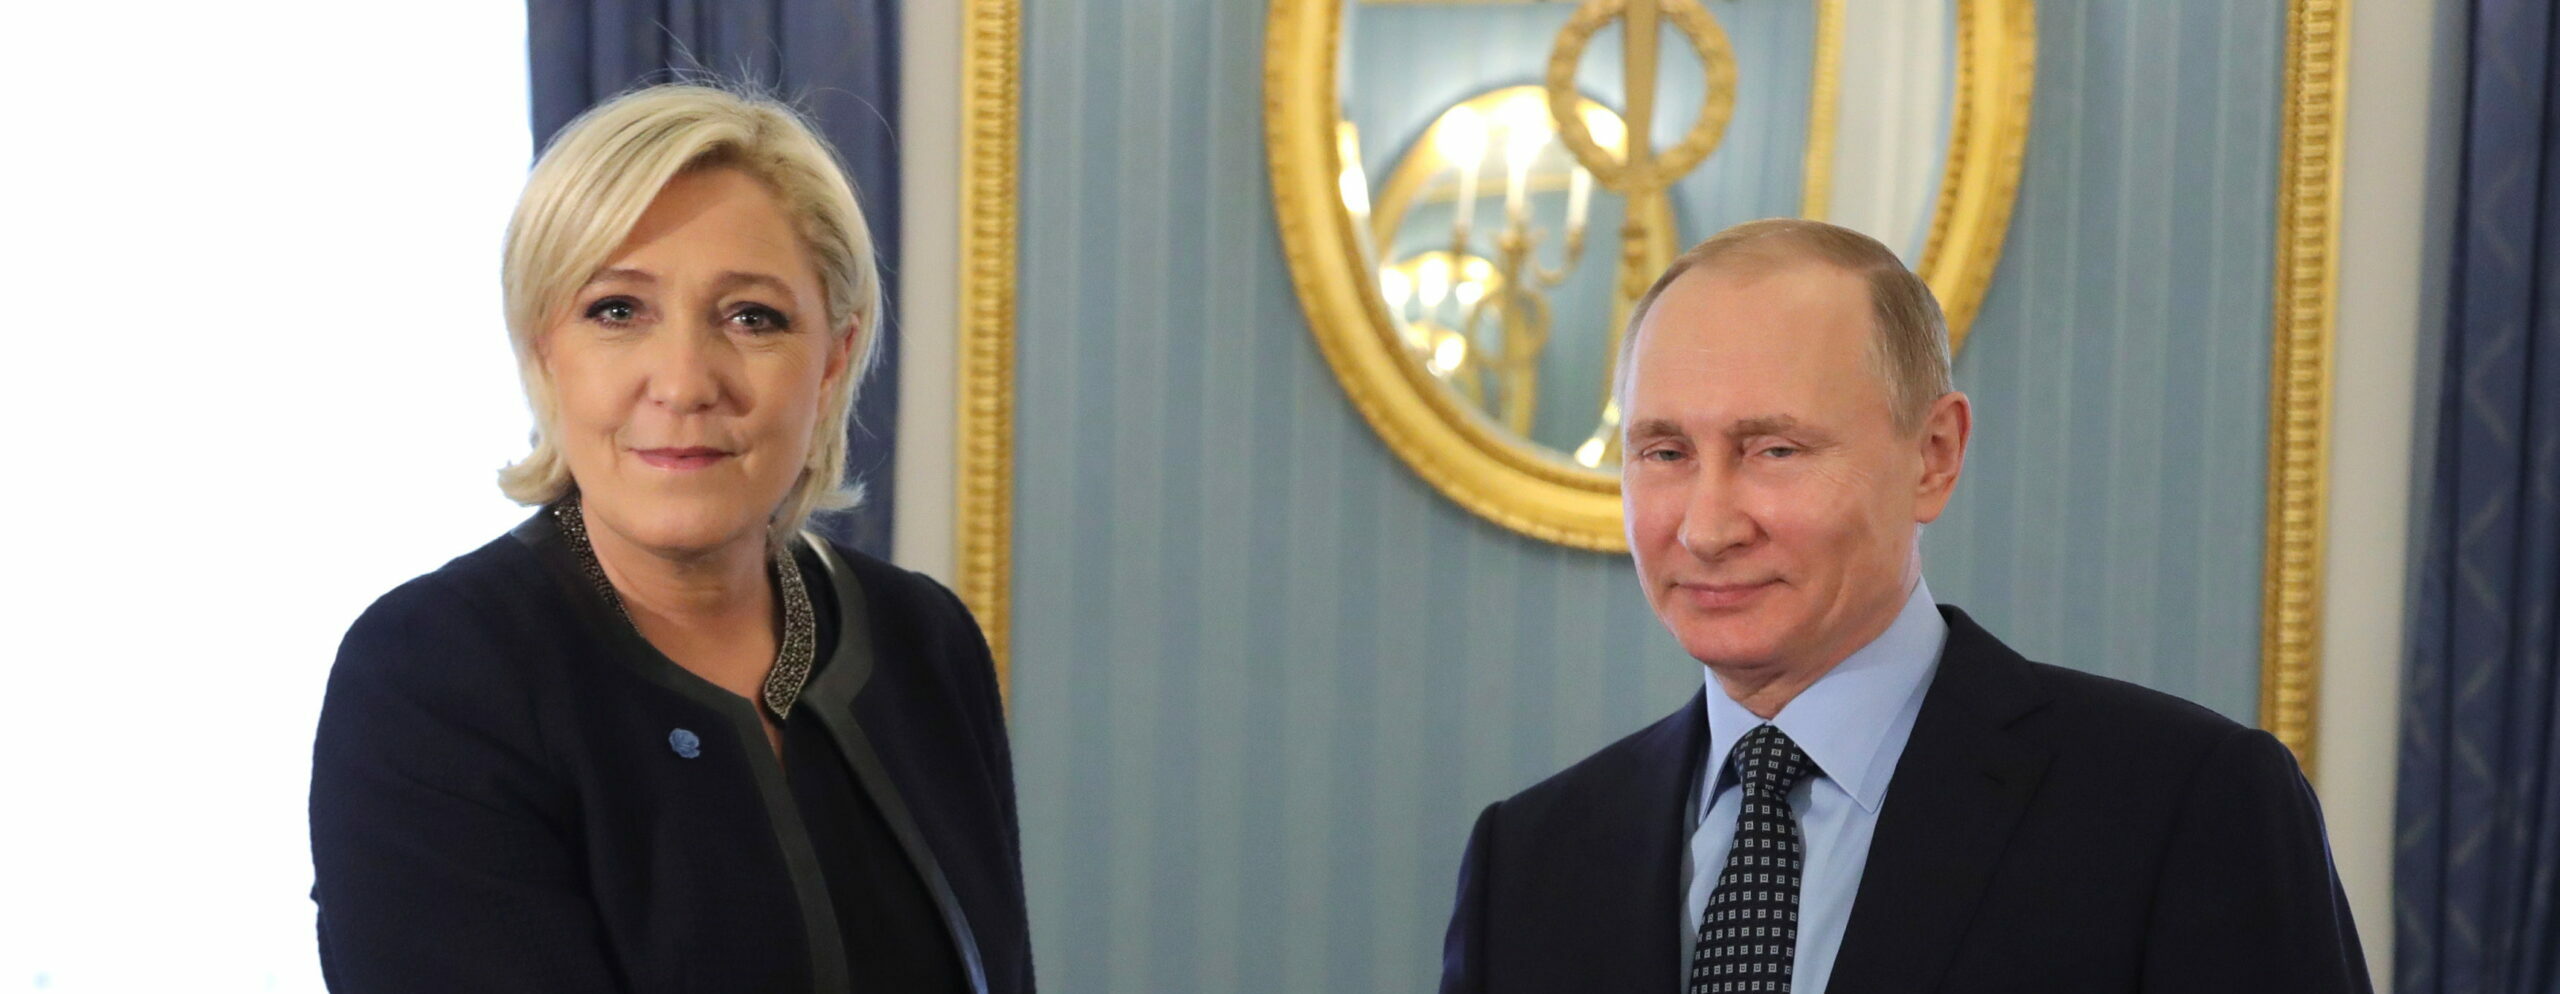 Selon la dernière enquête du Washington Post, la Russie intensifie ses efforts pour saper le soutien européen à l’Ukraine.